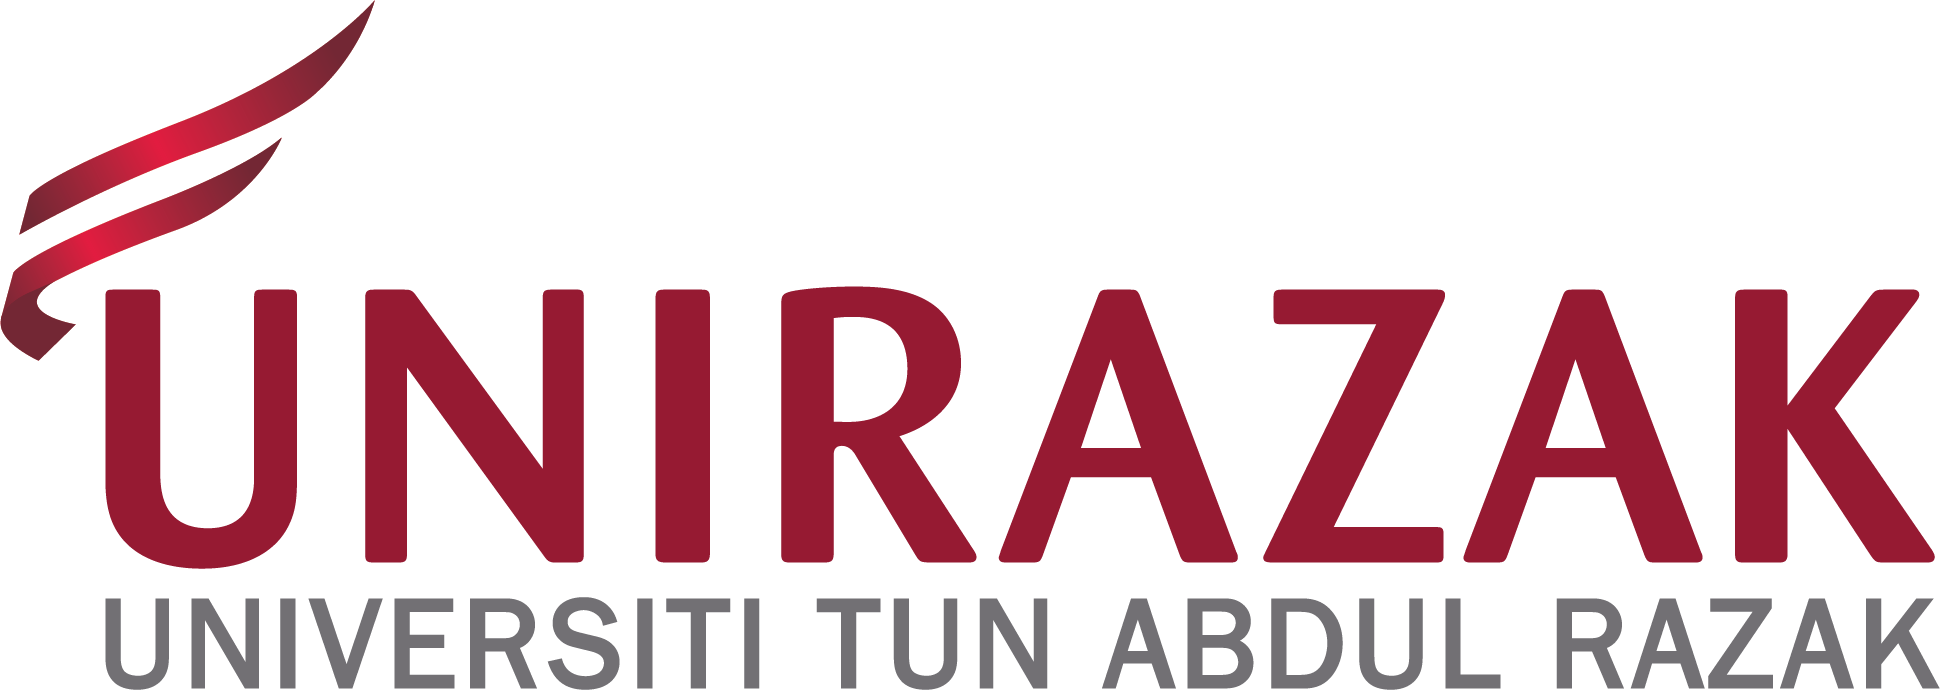 UNIRAZAK-logo-02